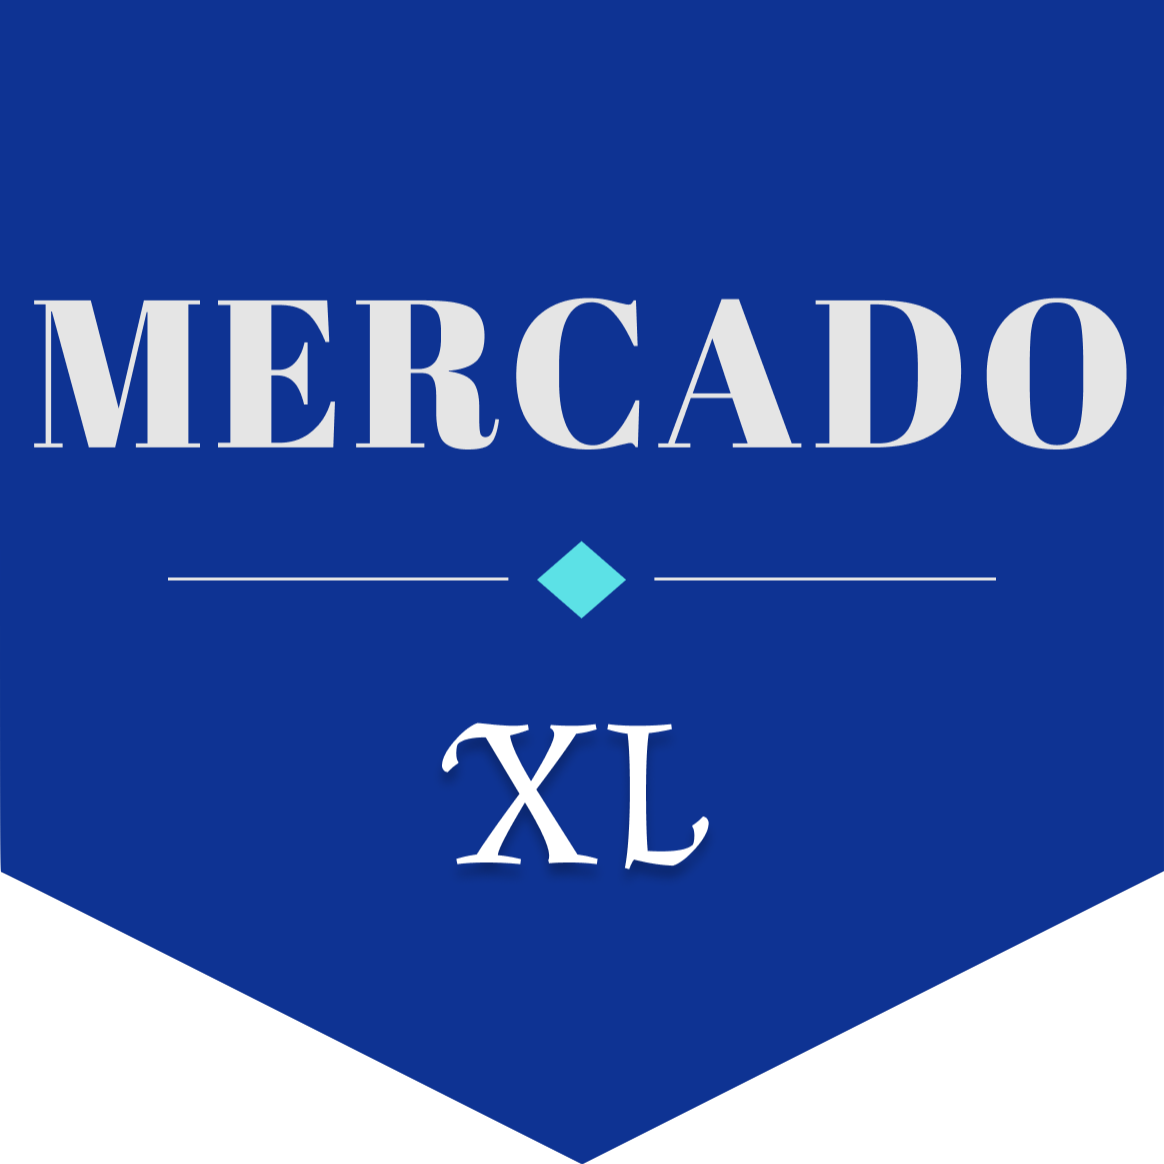 Mercado XL